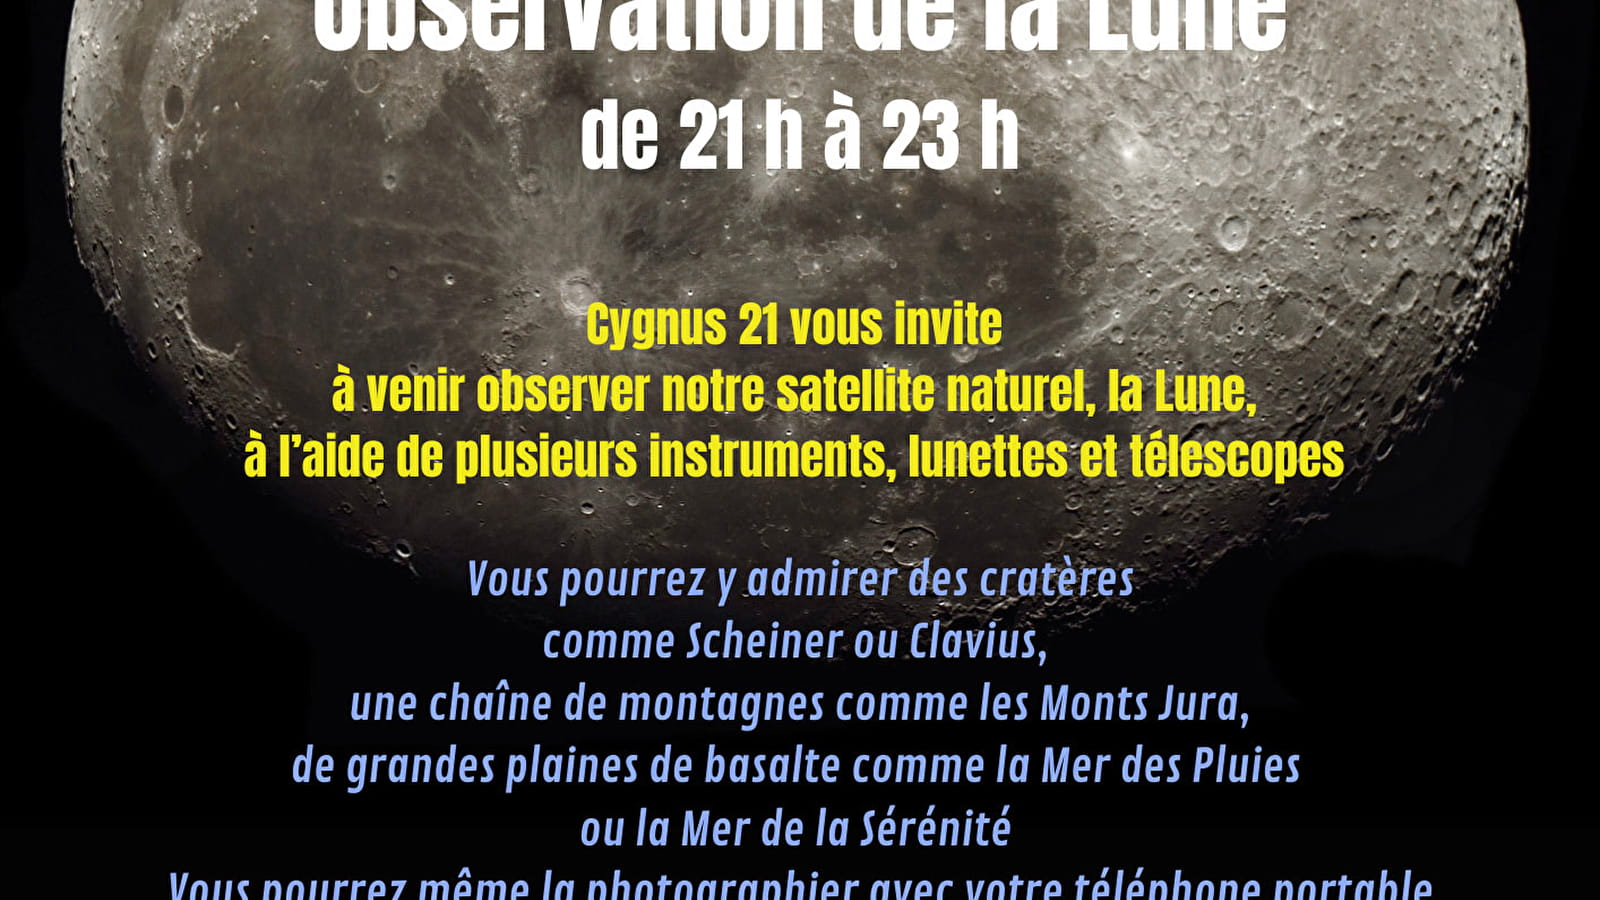 Museumnacht: maanwaarneming met de Cygnus 21 associatie